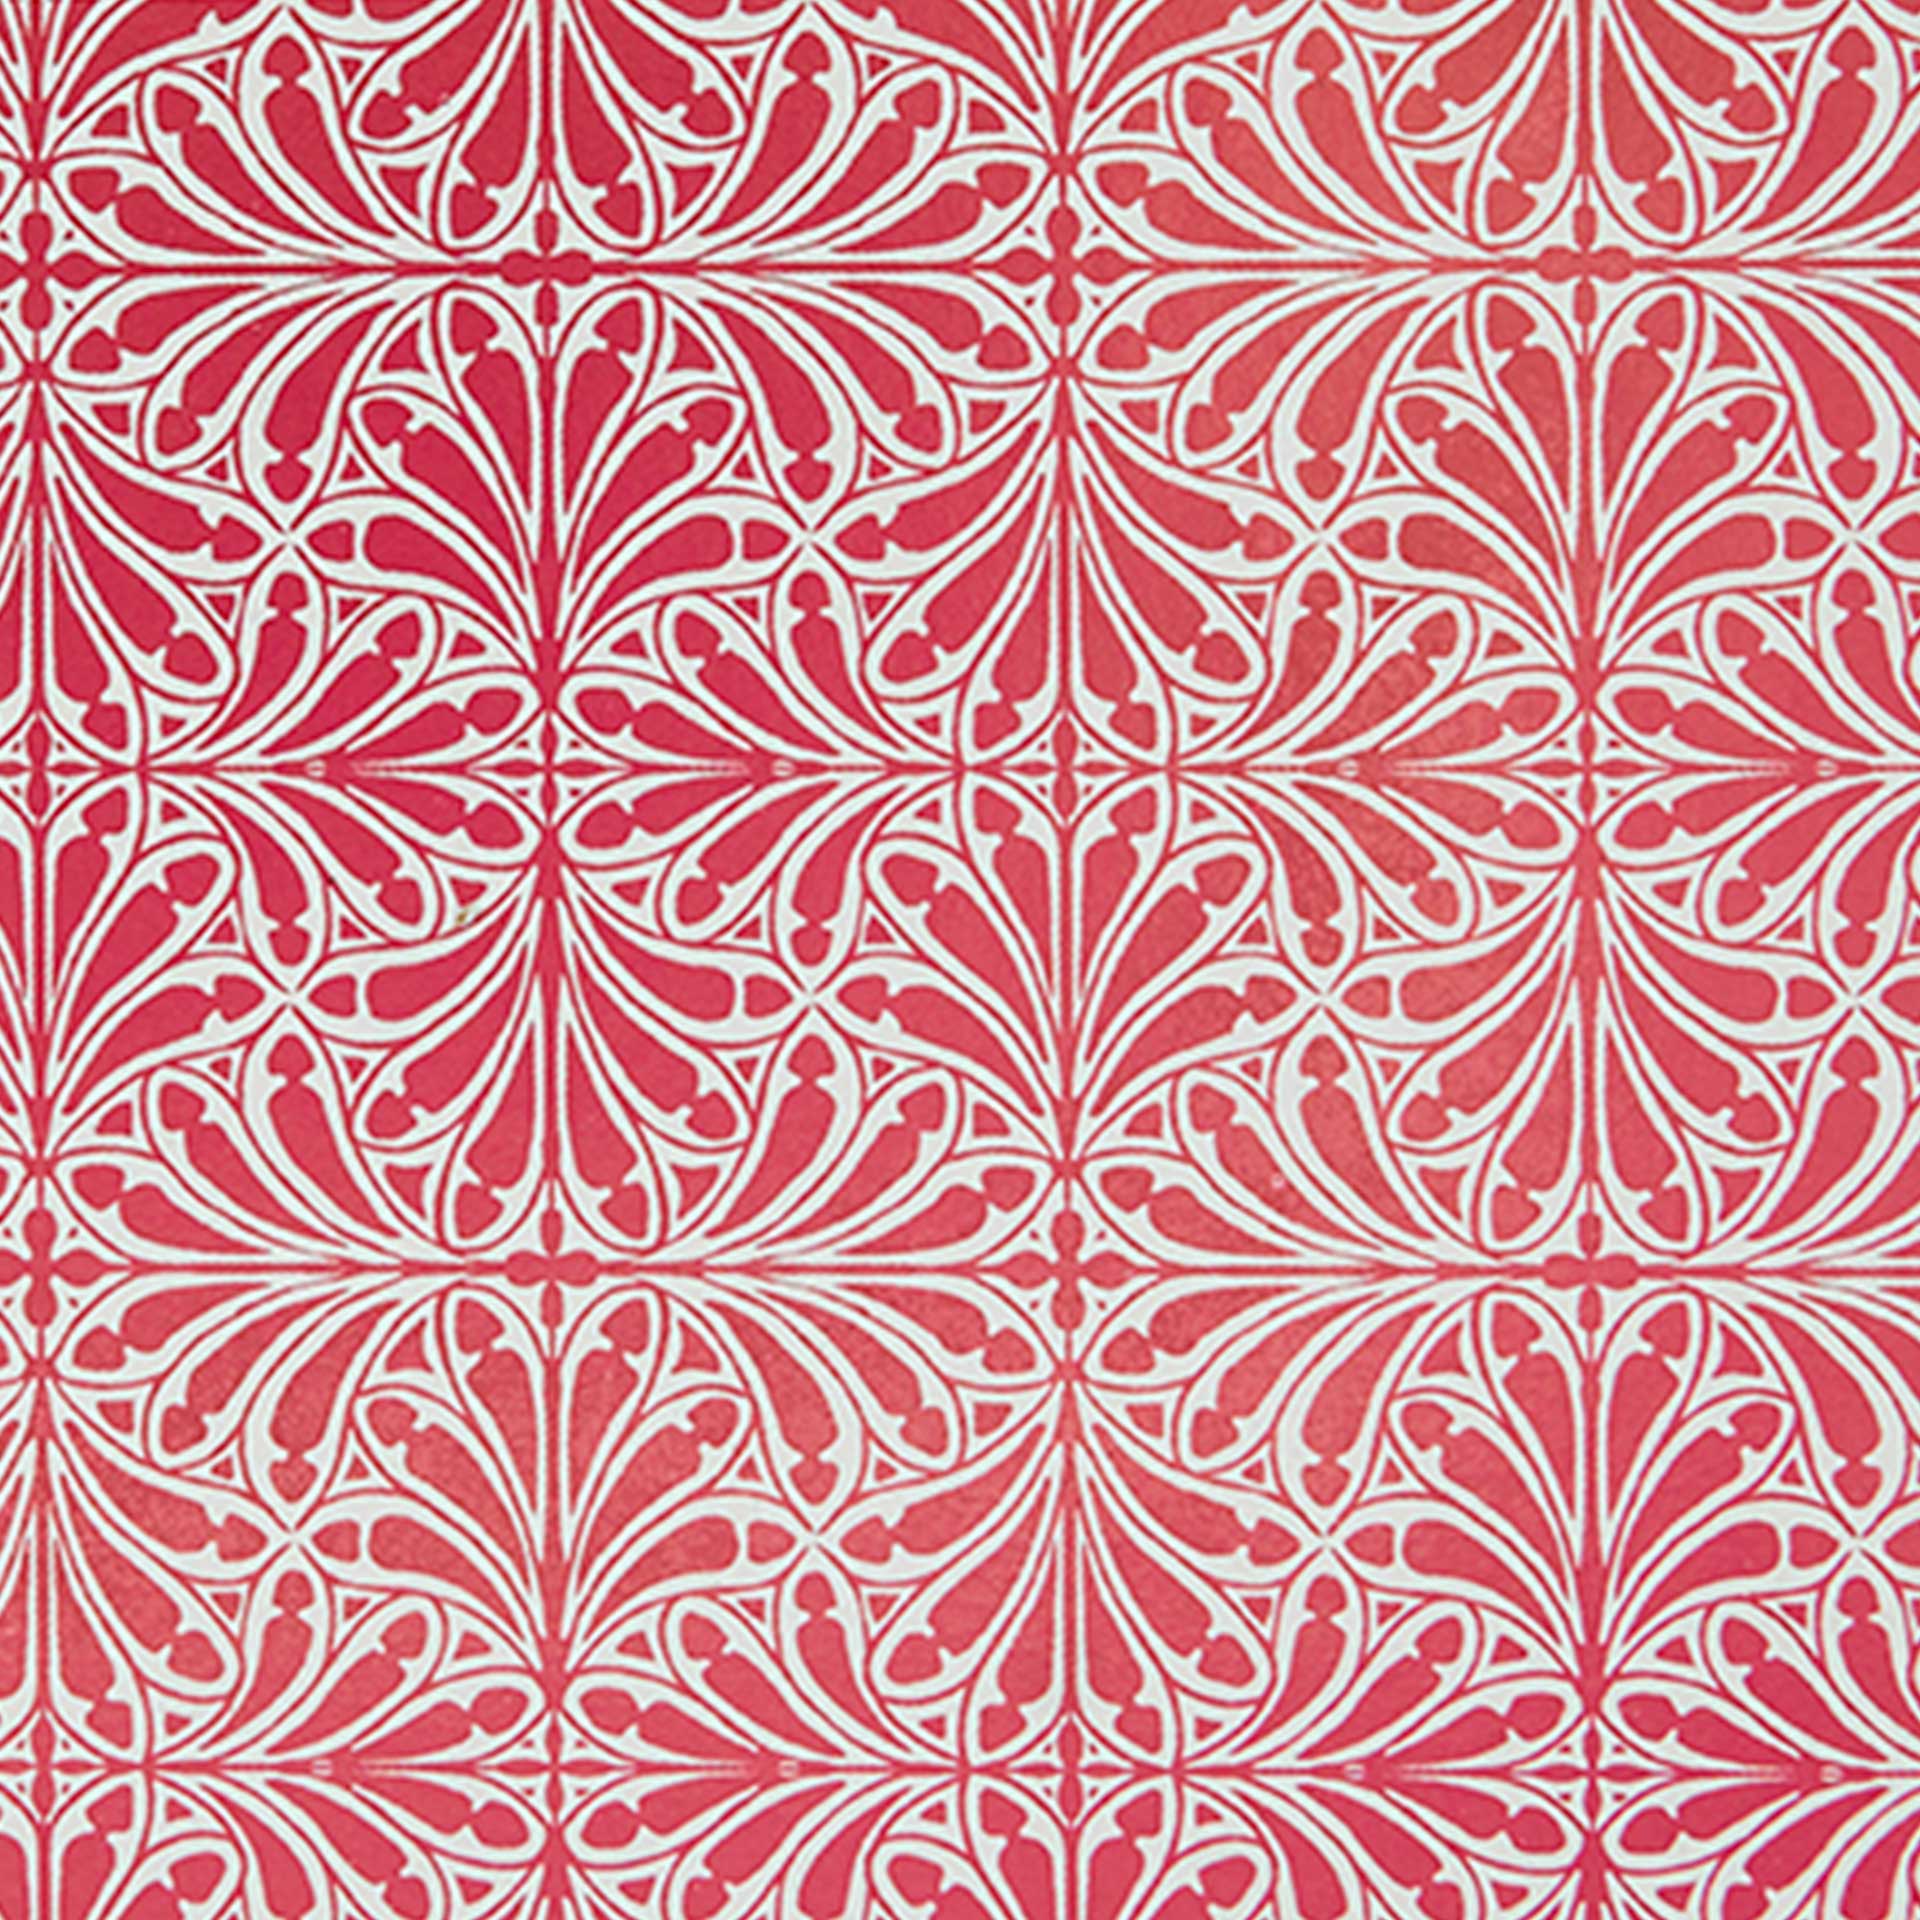 Closeup of a geometric pattern in red